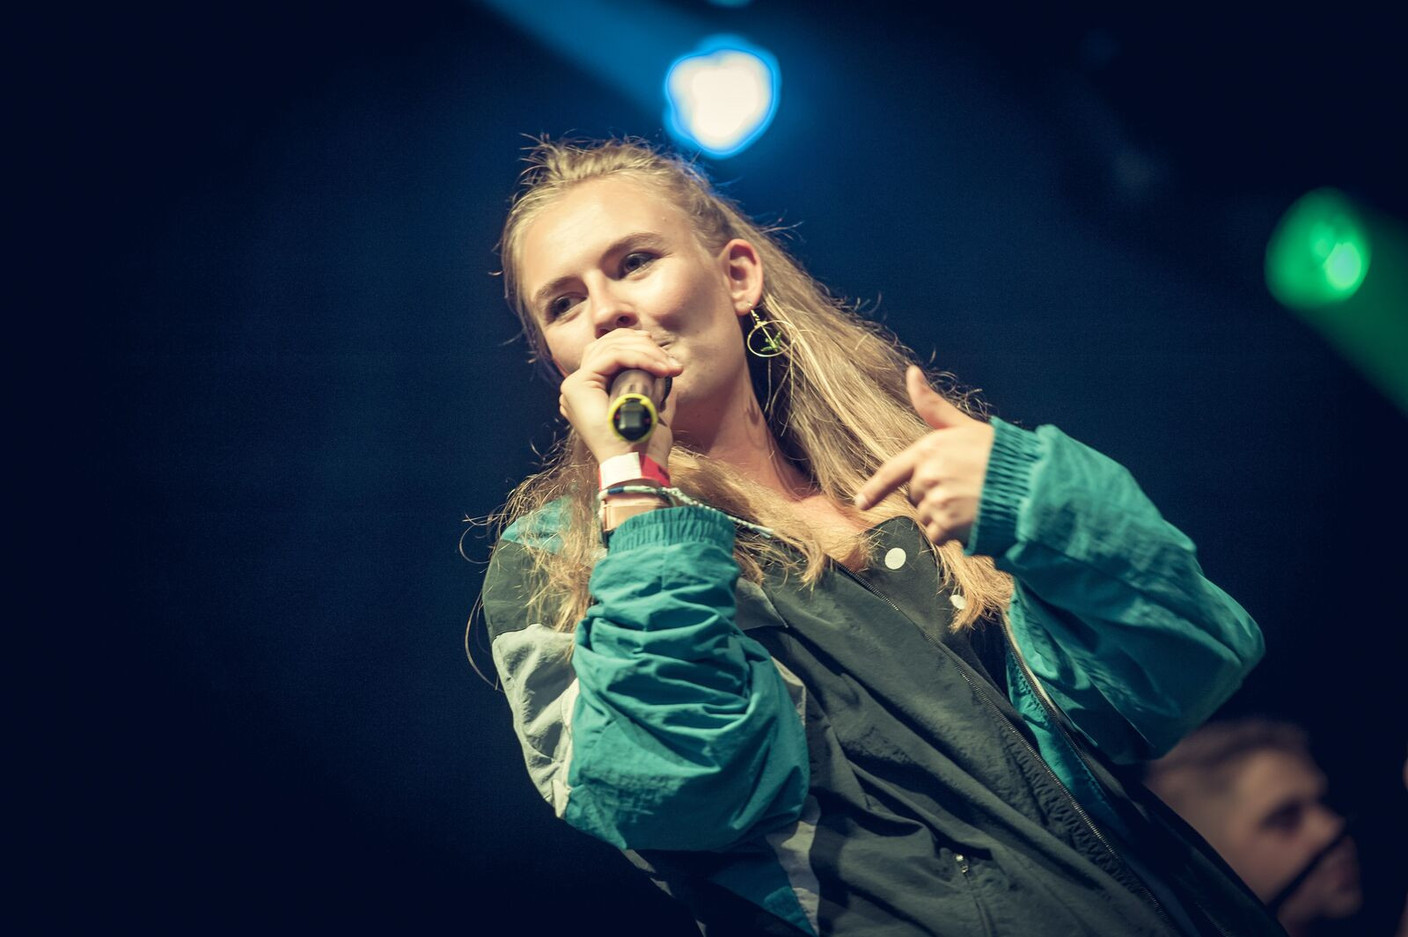 La jeune rappeuse luxembourgeoise Nicool, en plus d’être artiste invitée en résidence, se produira aussi sur scène à l’occasion du festival. (photo: Nicool)